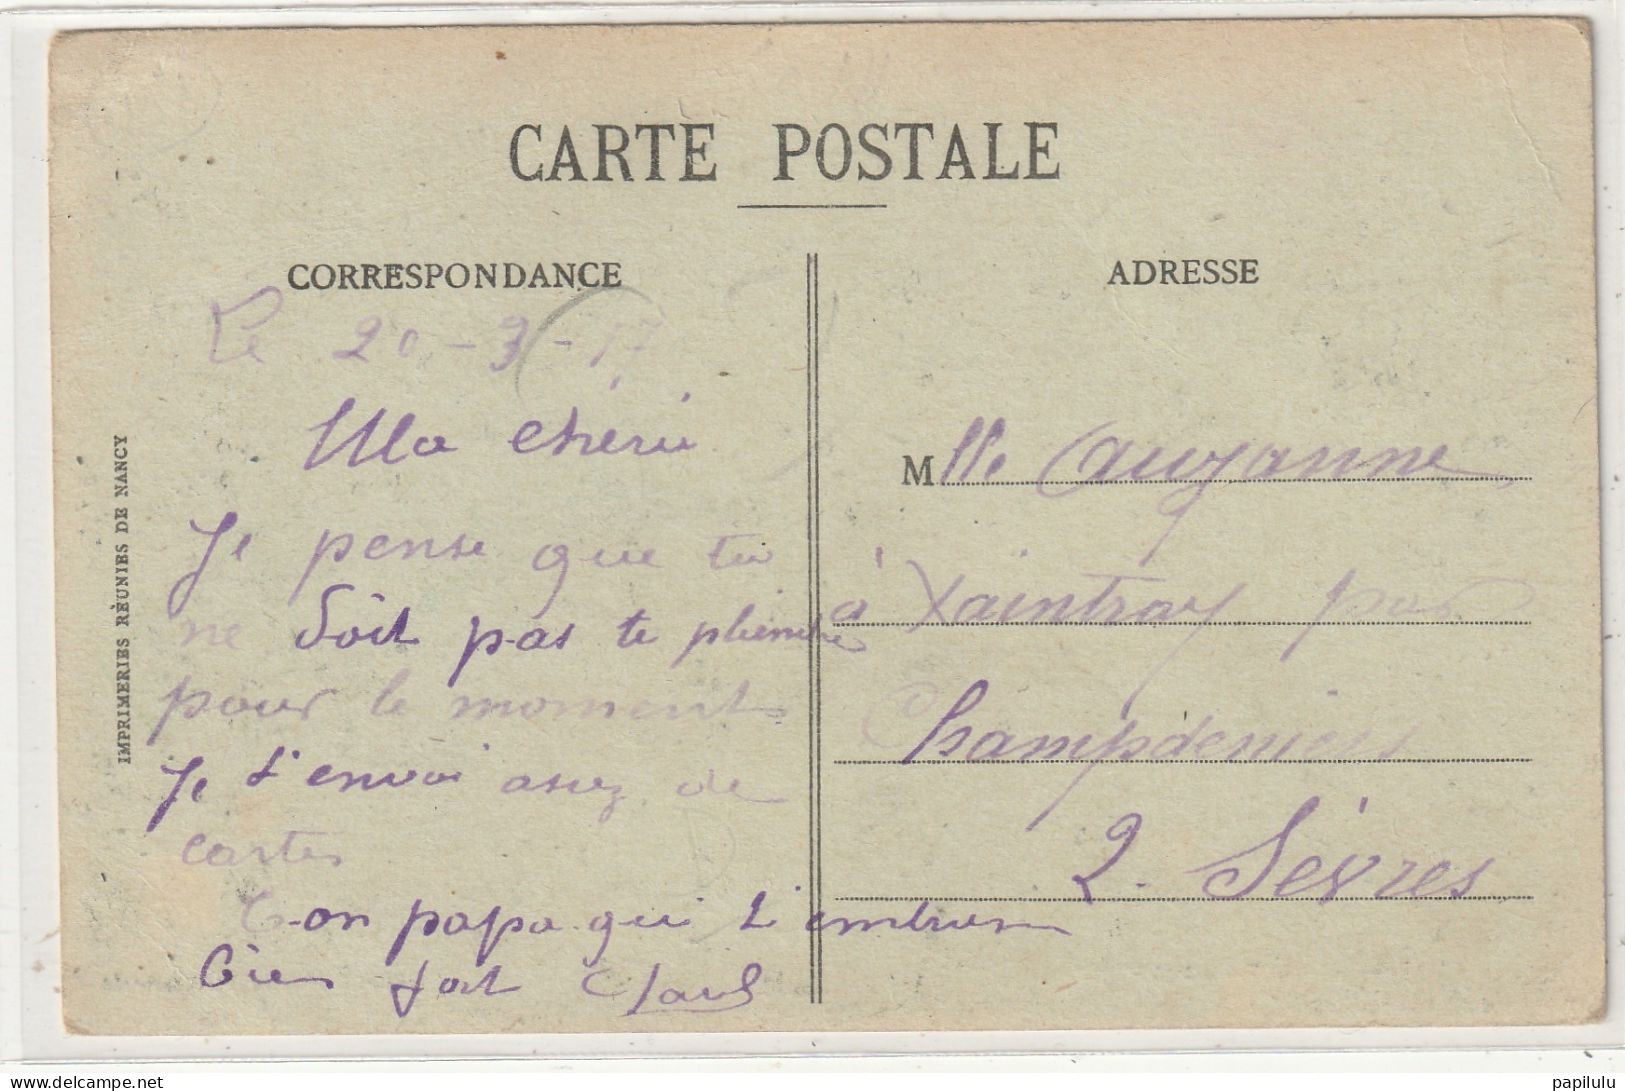 354 DEPT 51 : édit. E Moisson : Givry En Argonne Maison Etienne " Avion Publicitaire " Visé Le 7 Juin 1915 - Givry En Argonne